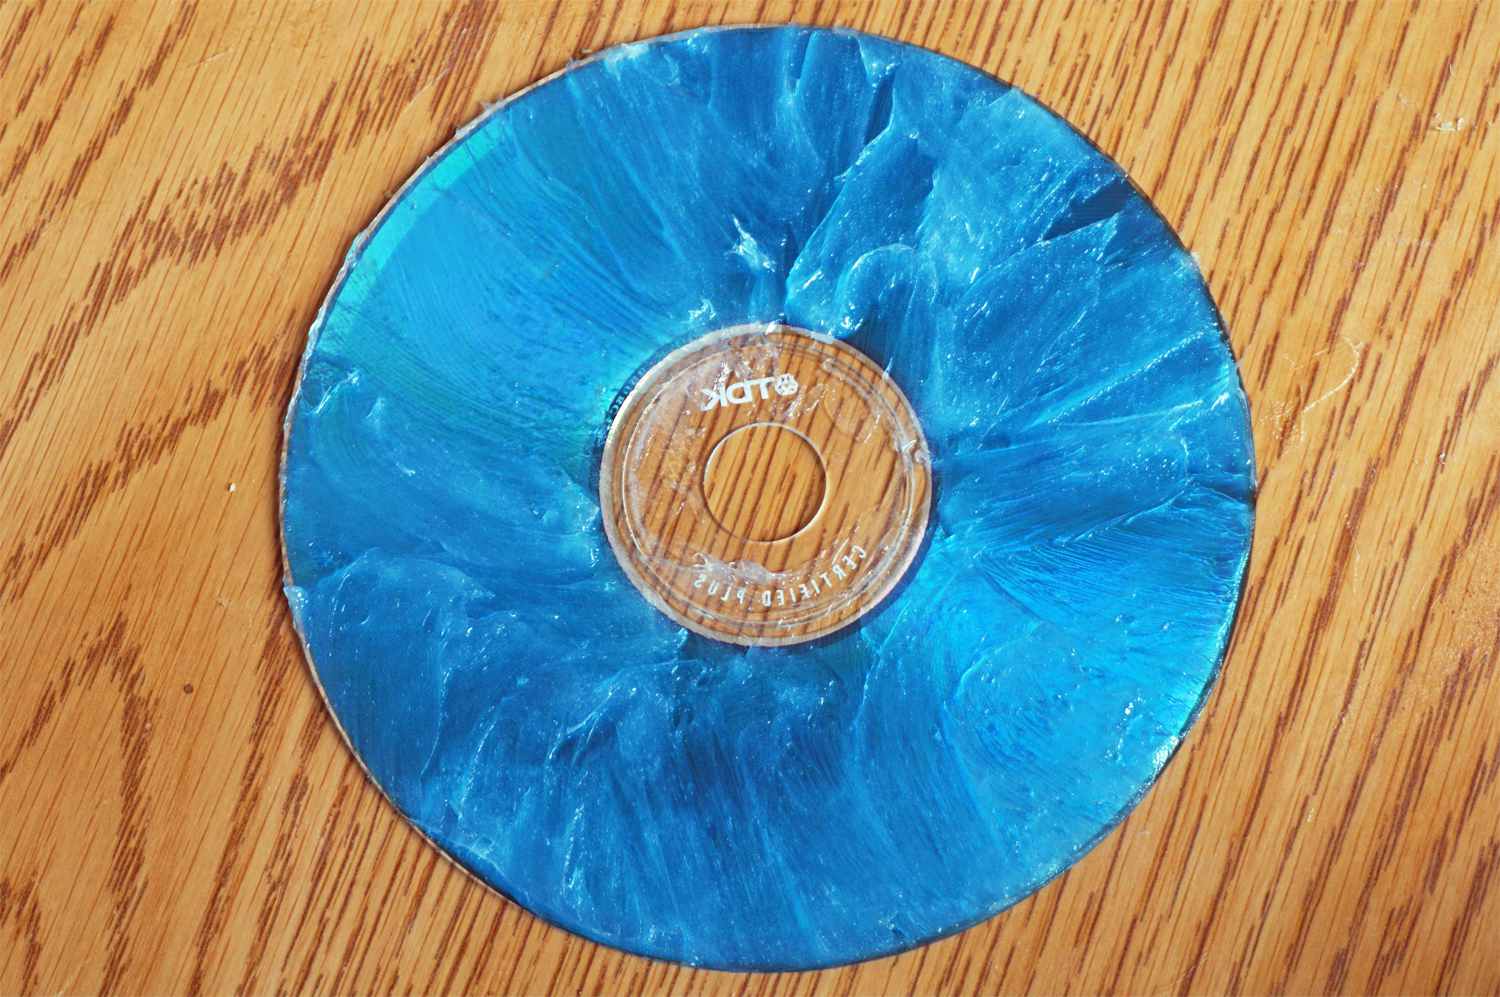 Skrapad CD täckt med vaxprodukt